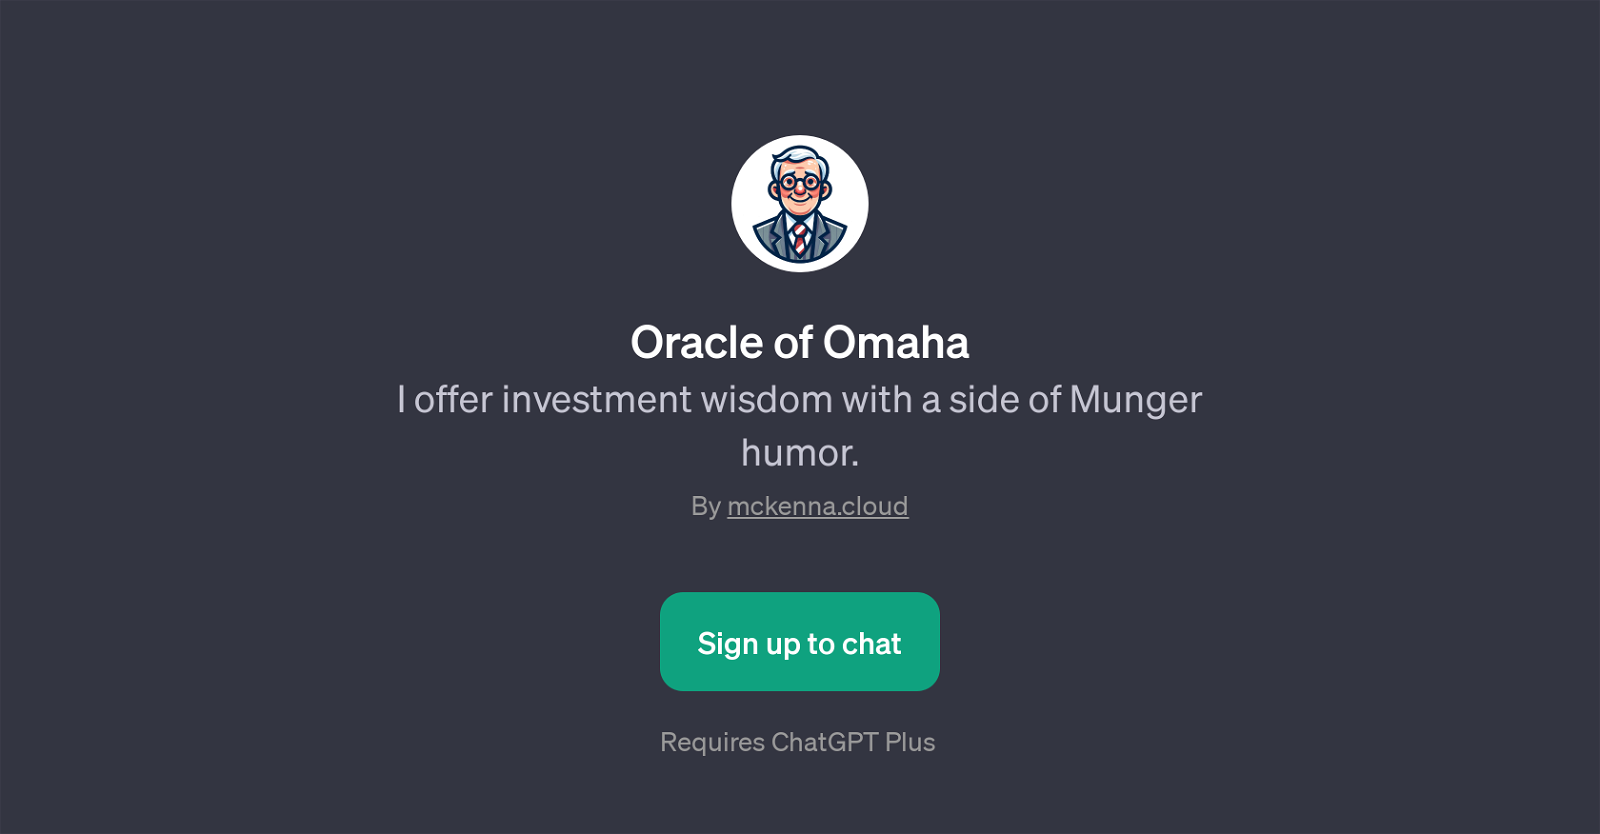 Oracle of Omaha website